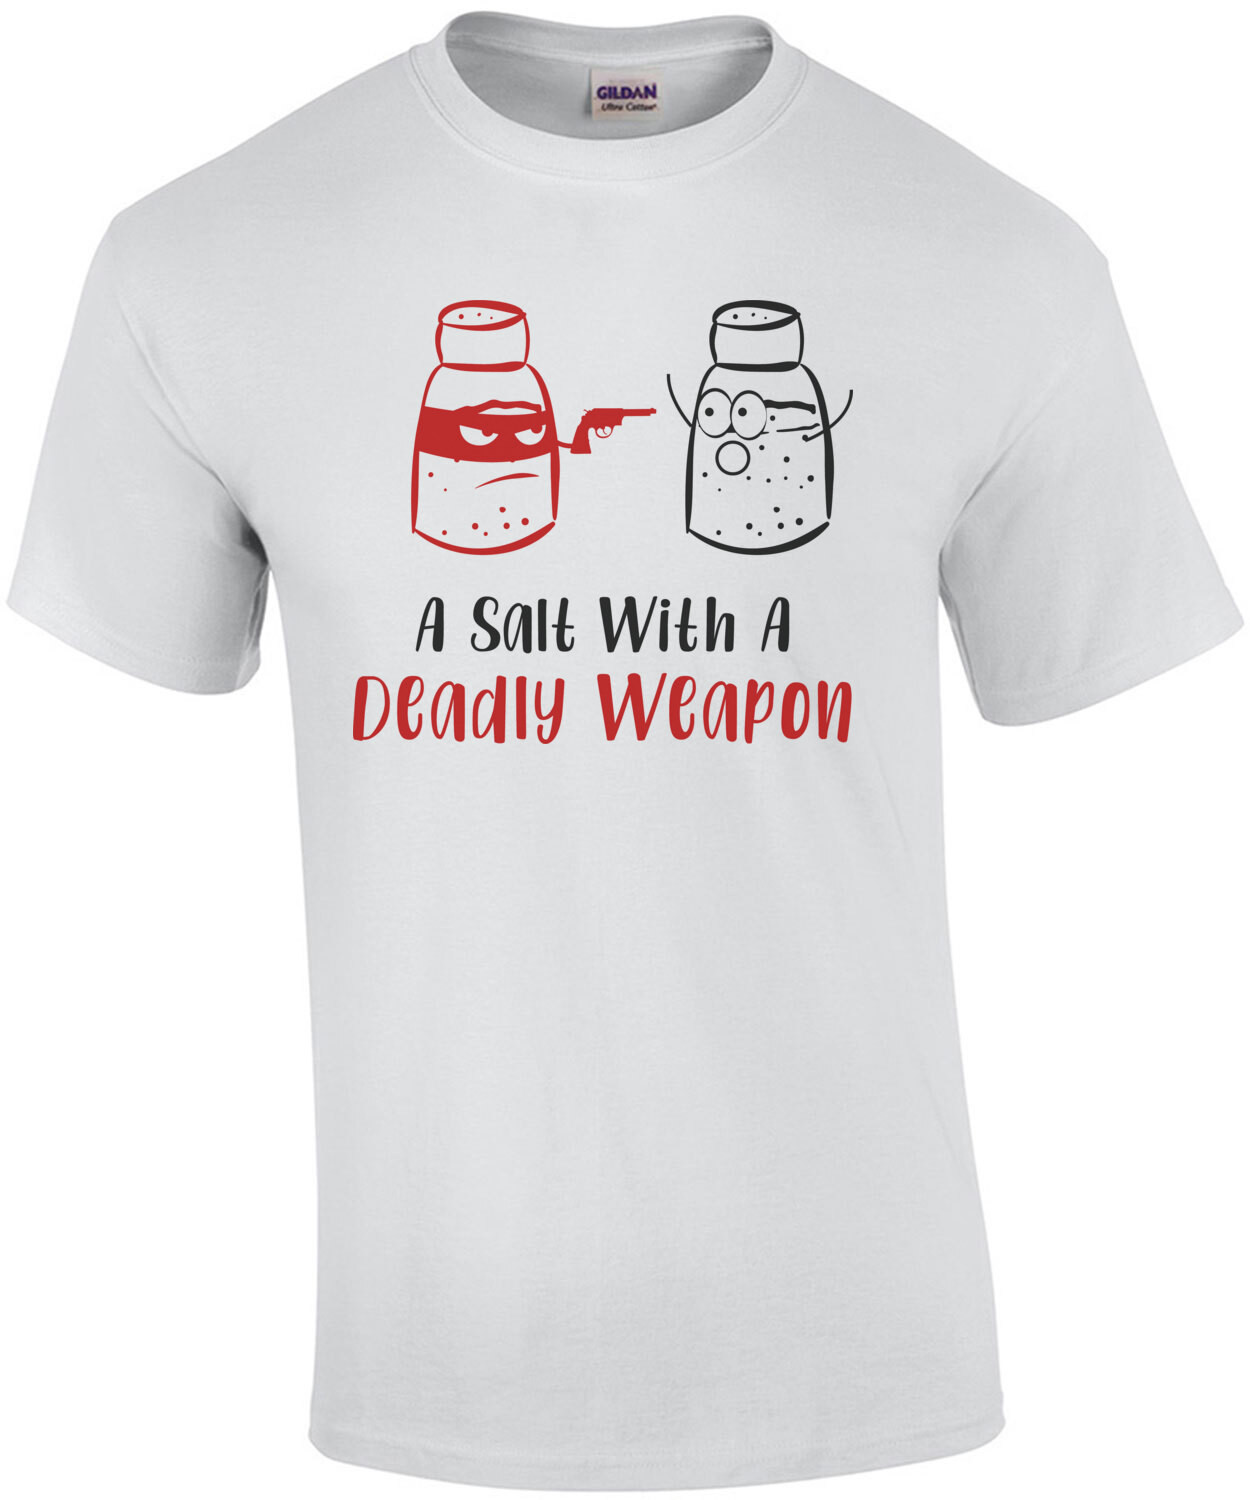 A salt with a deadly weapon - pun t-shirt